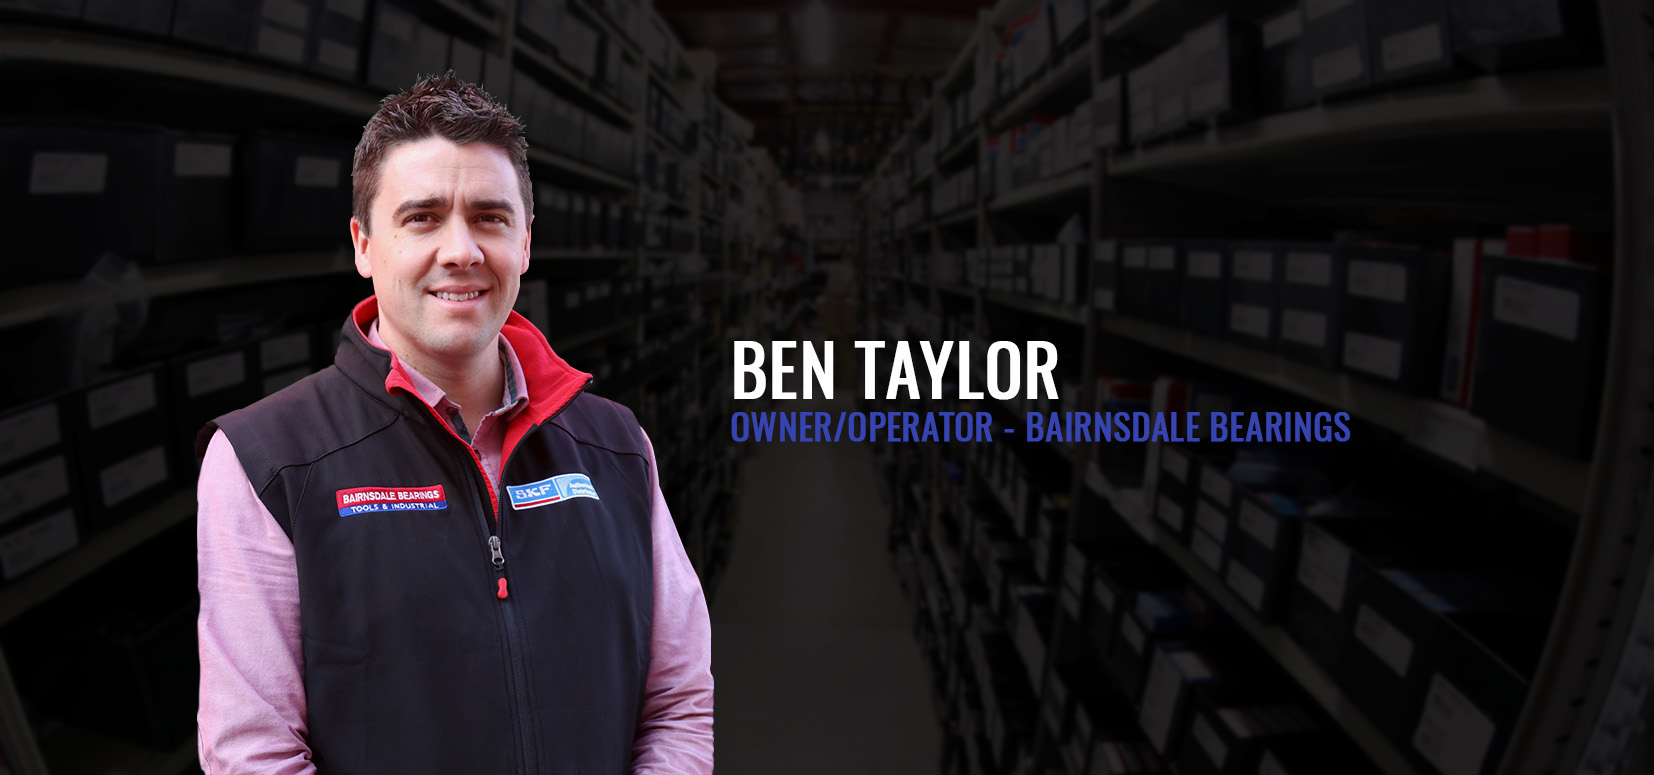 Ben Taylor, owner